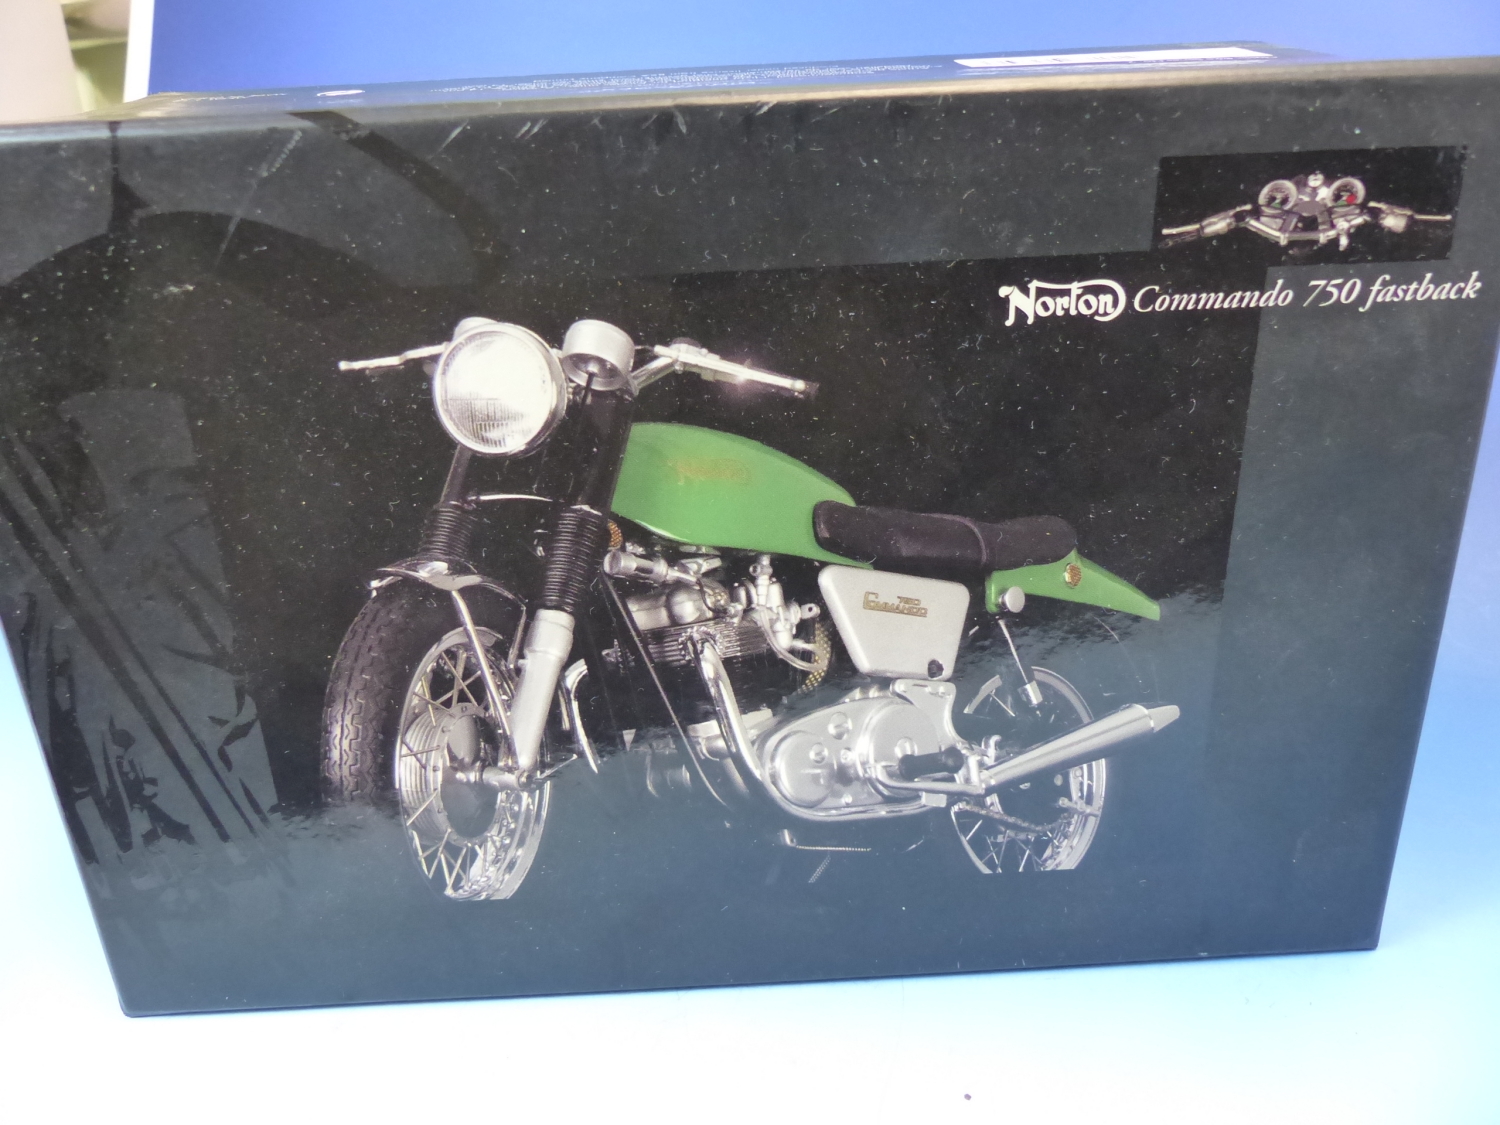 A MINICHAMPS SCALE MODEL OF A NORTON COMMANDO 750 FASTBACK MOTORBIKE IN ITS ORIGINAL BOX, THE BOX. W - Image 2 of 6